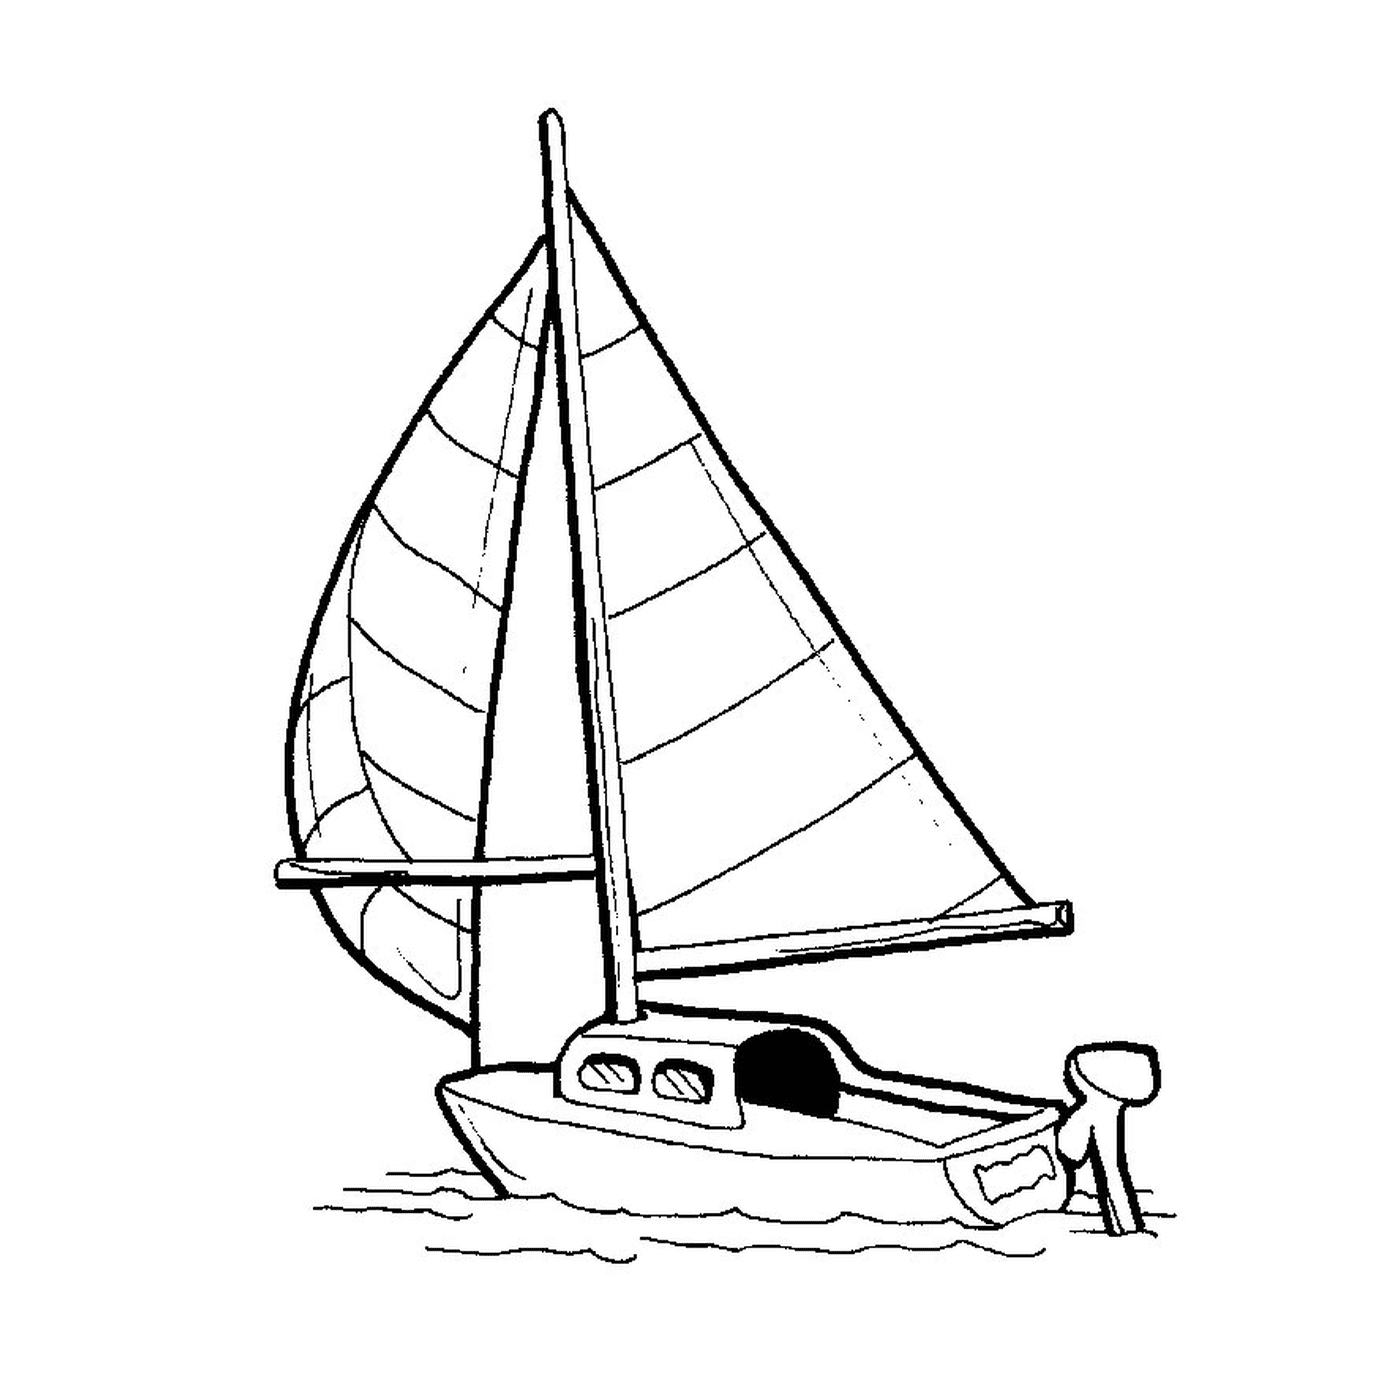   Un bateau de course est montré dans un dessin 